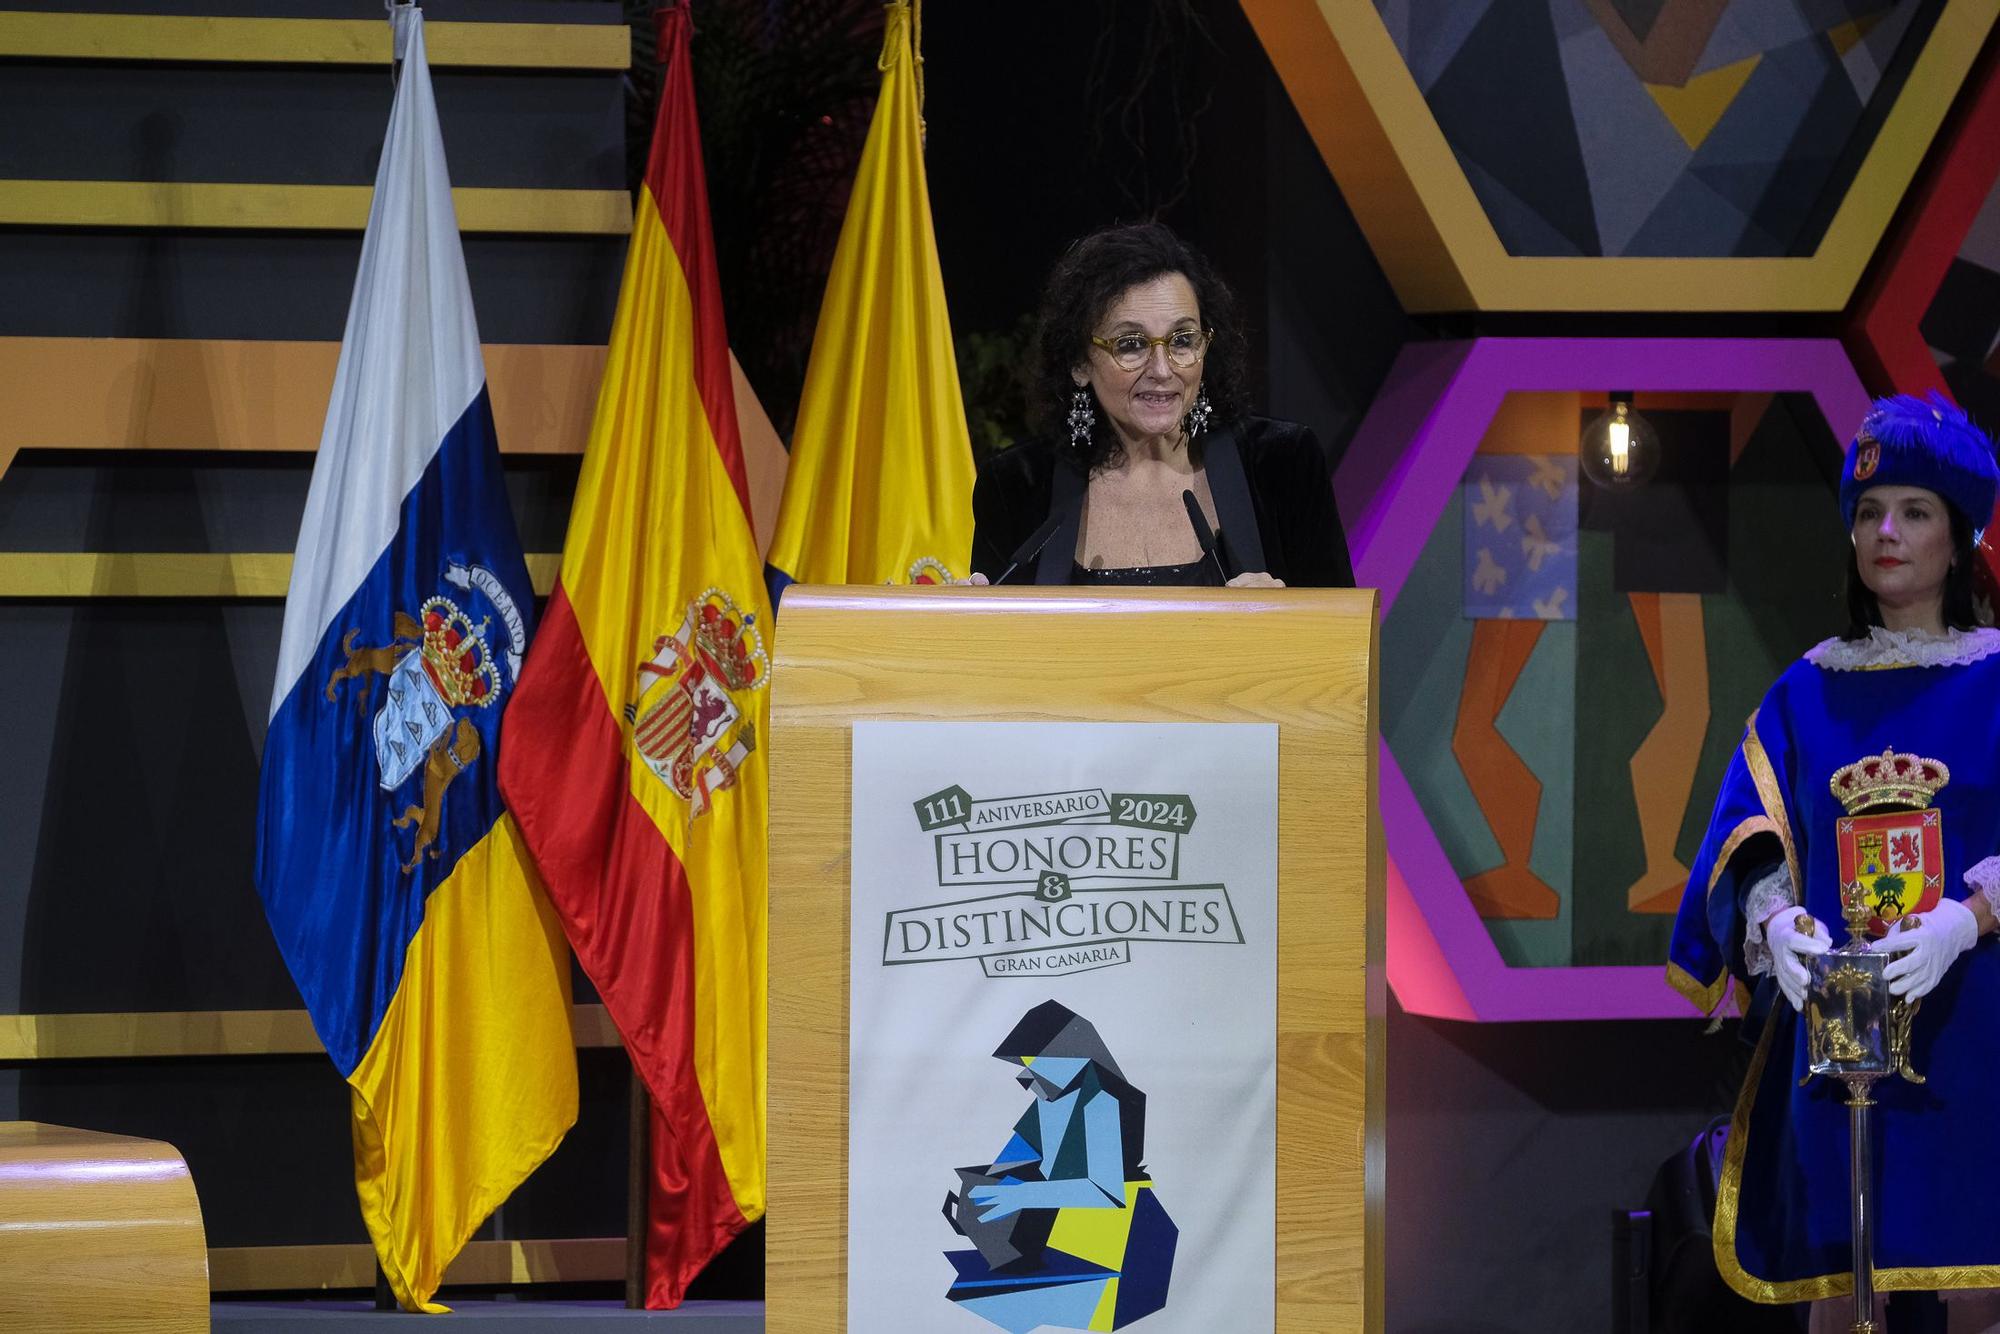 Acto de entrega de Honores y Distinciones del Cabildo de Gran Canaria 2024